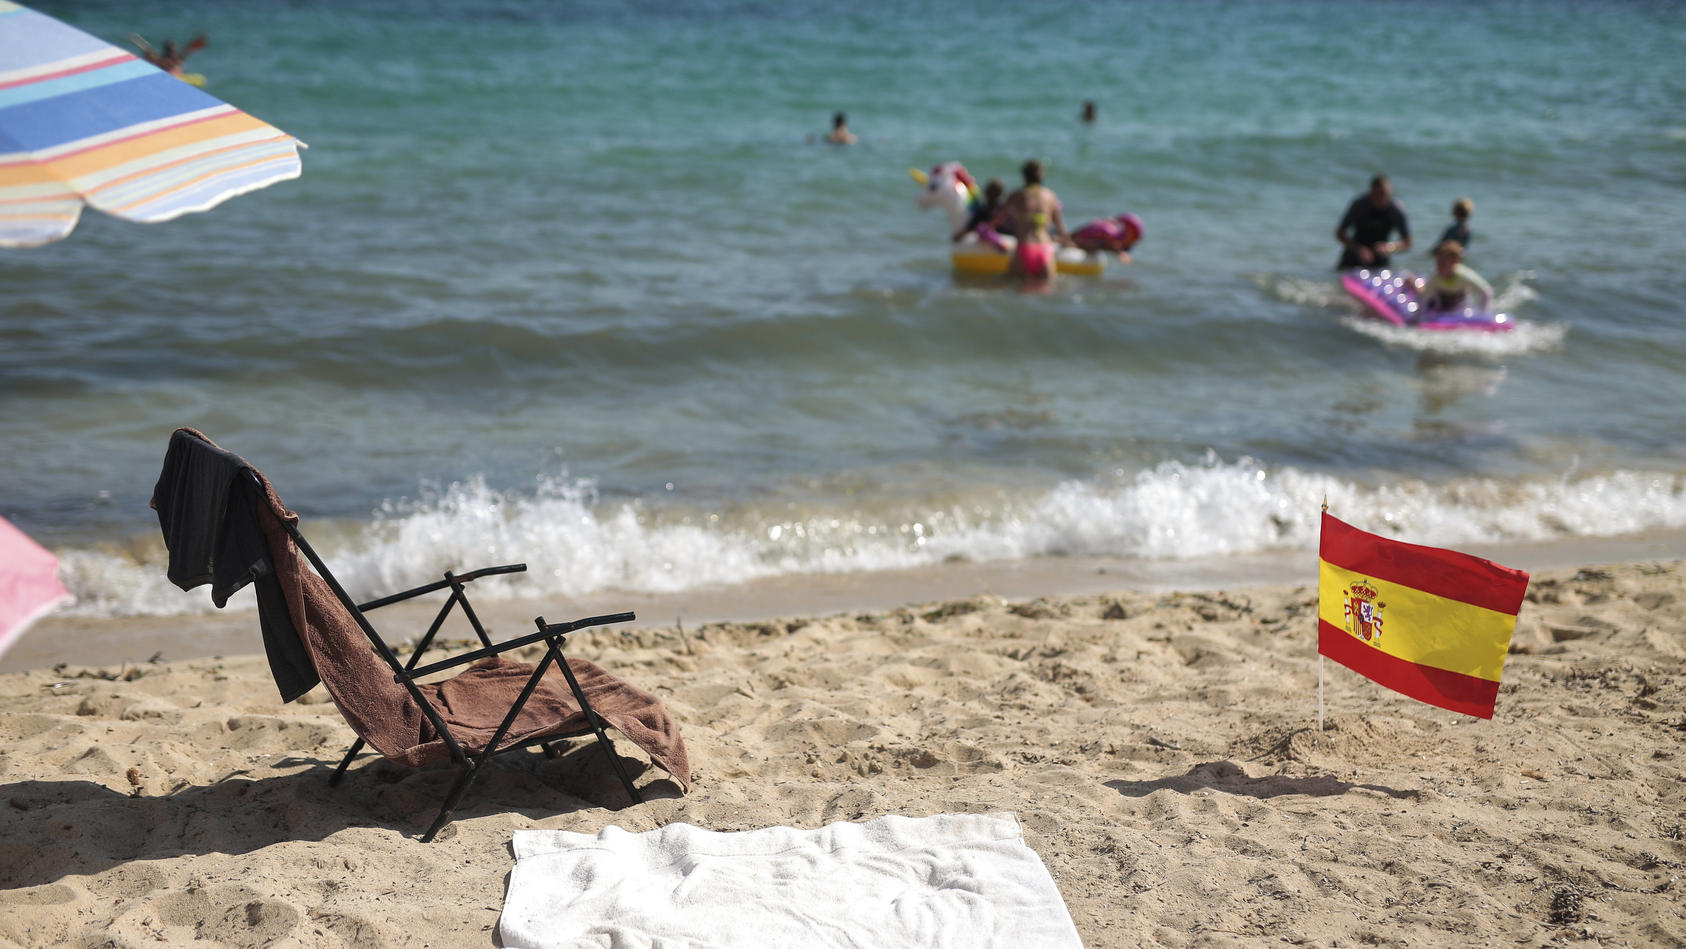 26.07.2020, Spanien, Mallorca: Eine spanische Flagge, die als soziale Distanzierungsbeschilderung verwendet wird, ragt am Strand in Palma de Mallorca Sand hervor. Spanien verhandelt mit Großbritannien darüber, die Balearen und die Kanaren von der sei